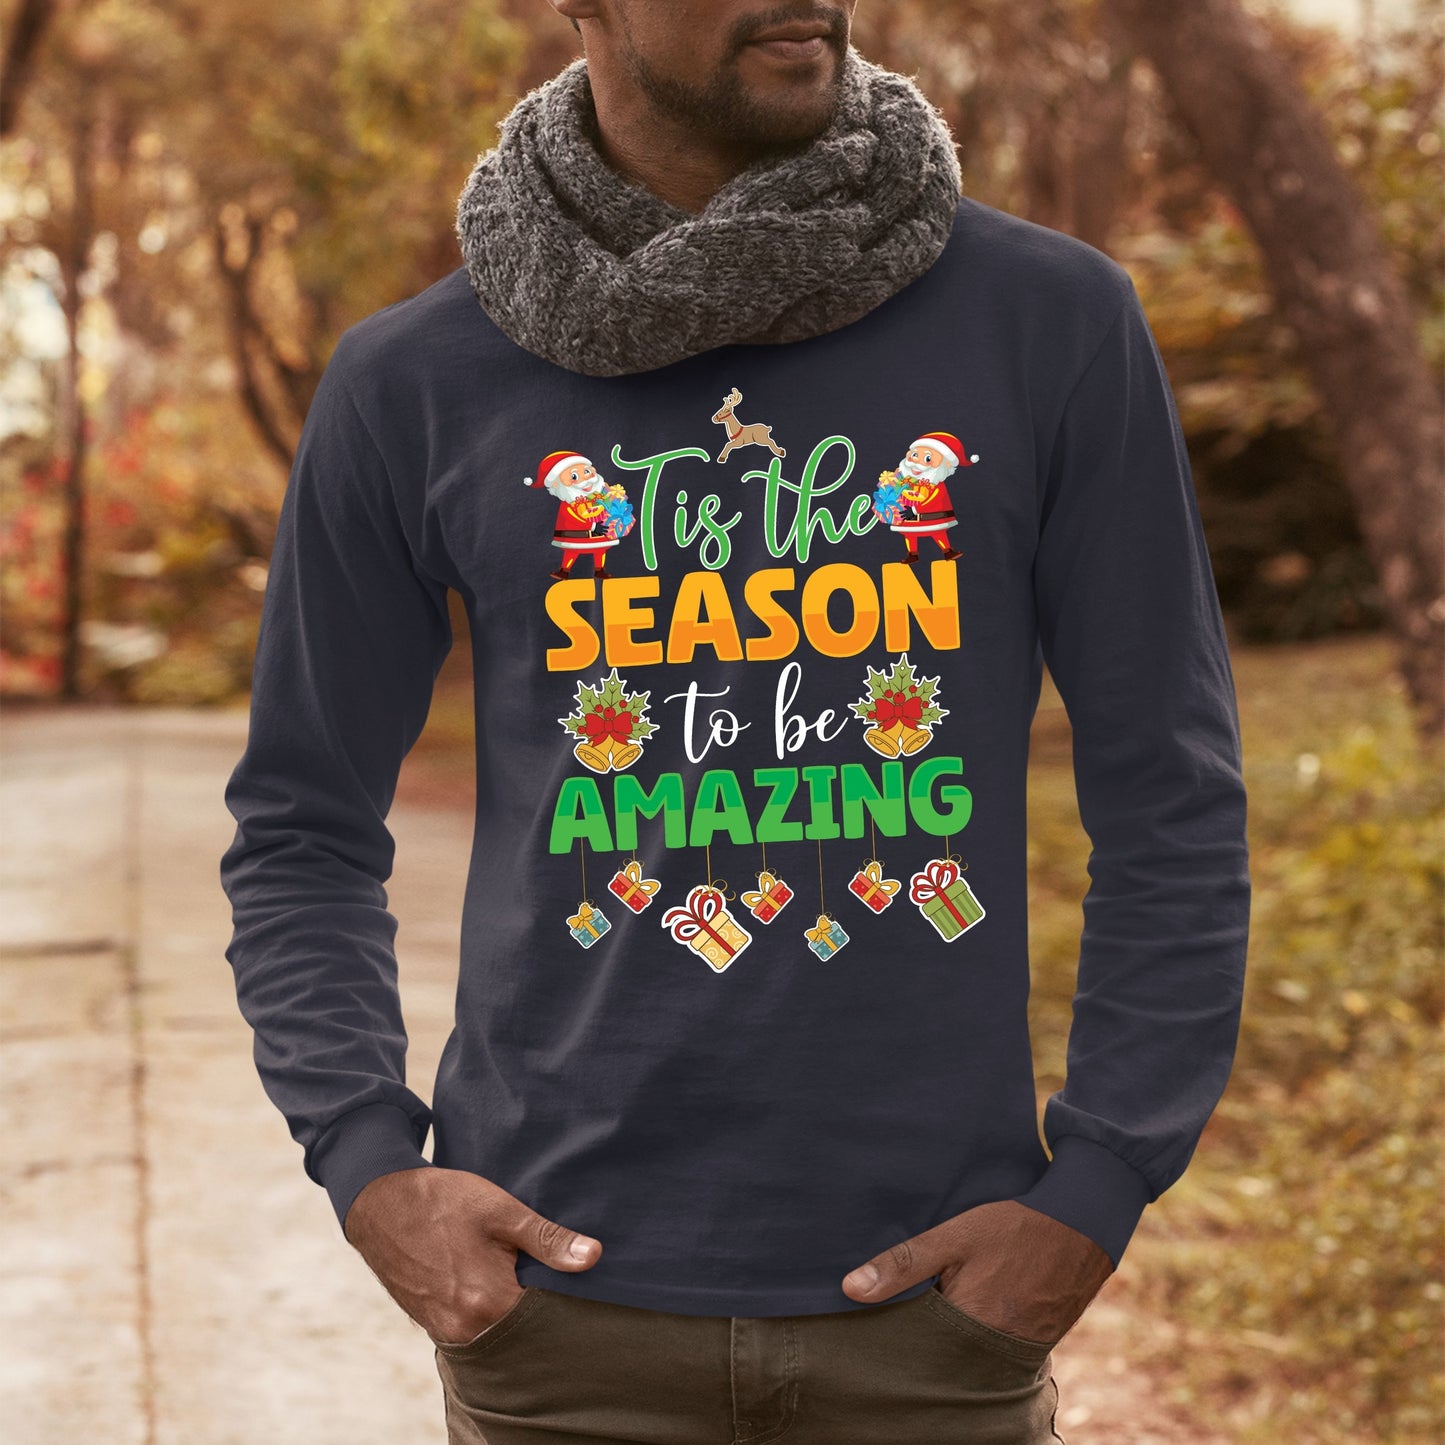 Tis the Season to Be Amazing, Christmas Long Sleeves, Christmas Crewneck For Men, Christmas Sweater, Christmas Sweatshirt, Christmas Present